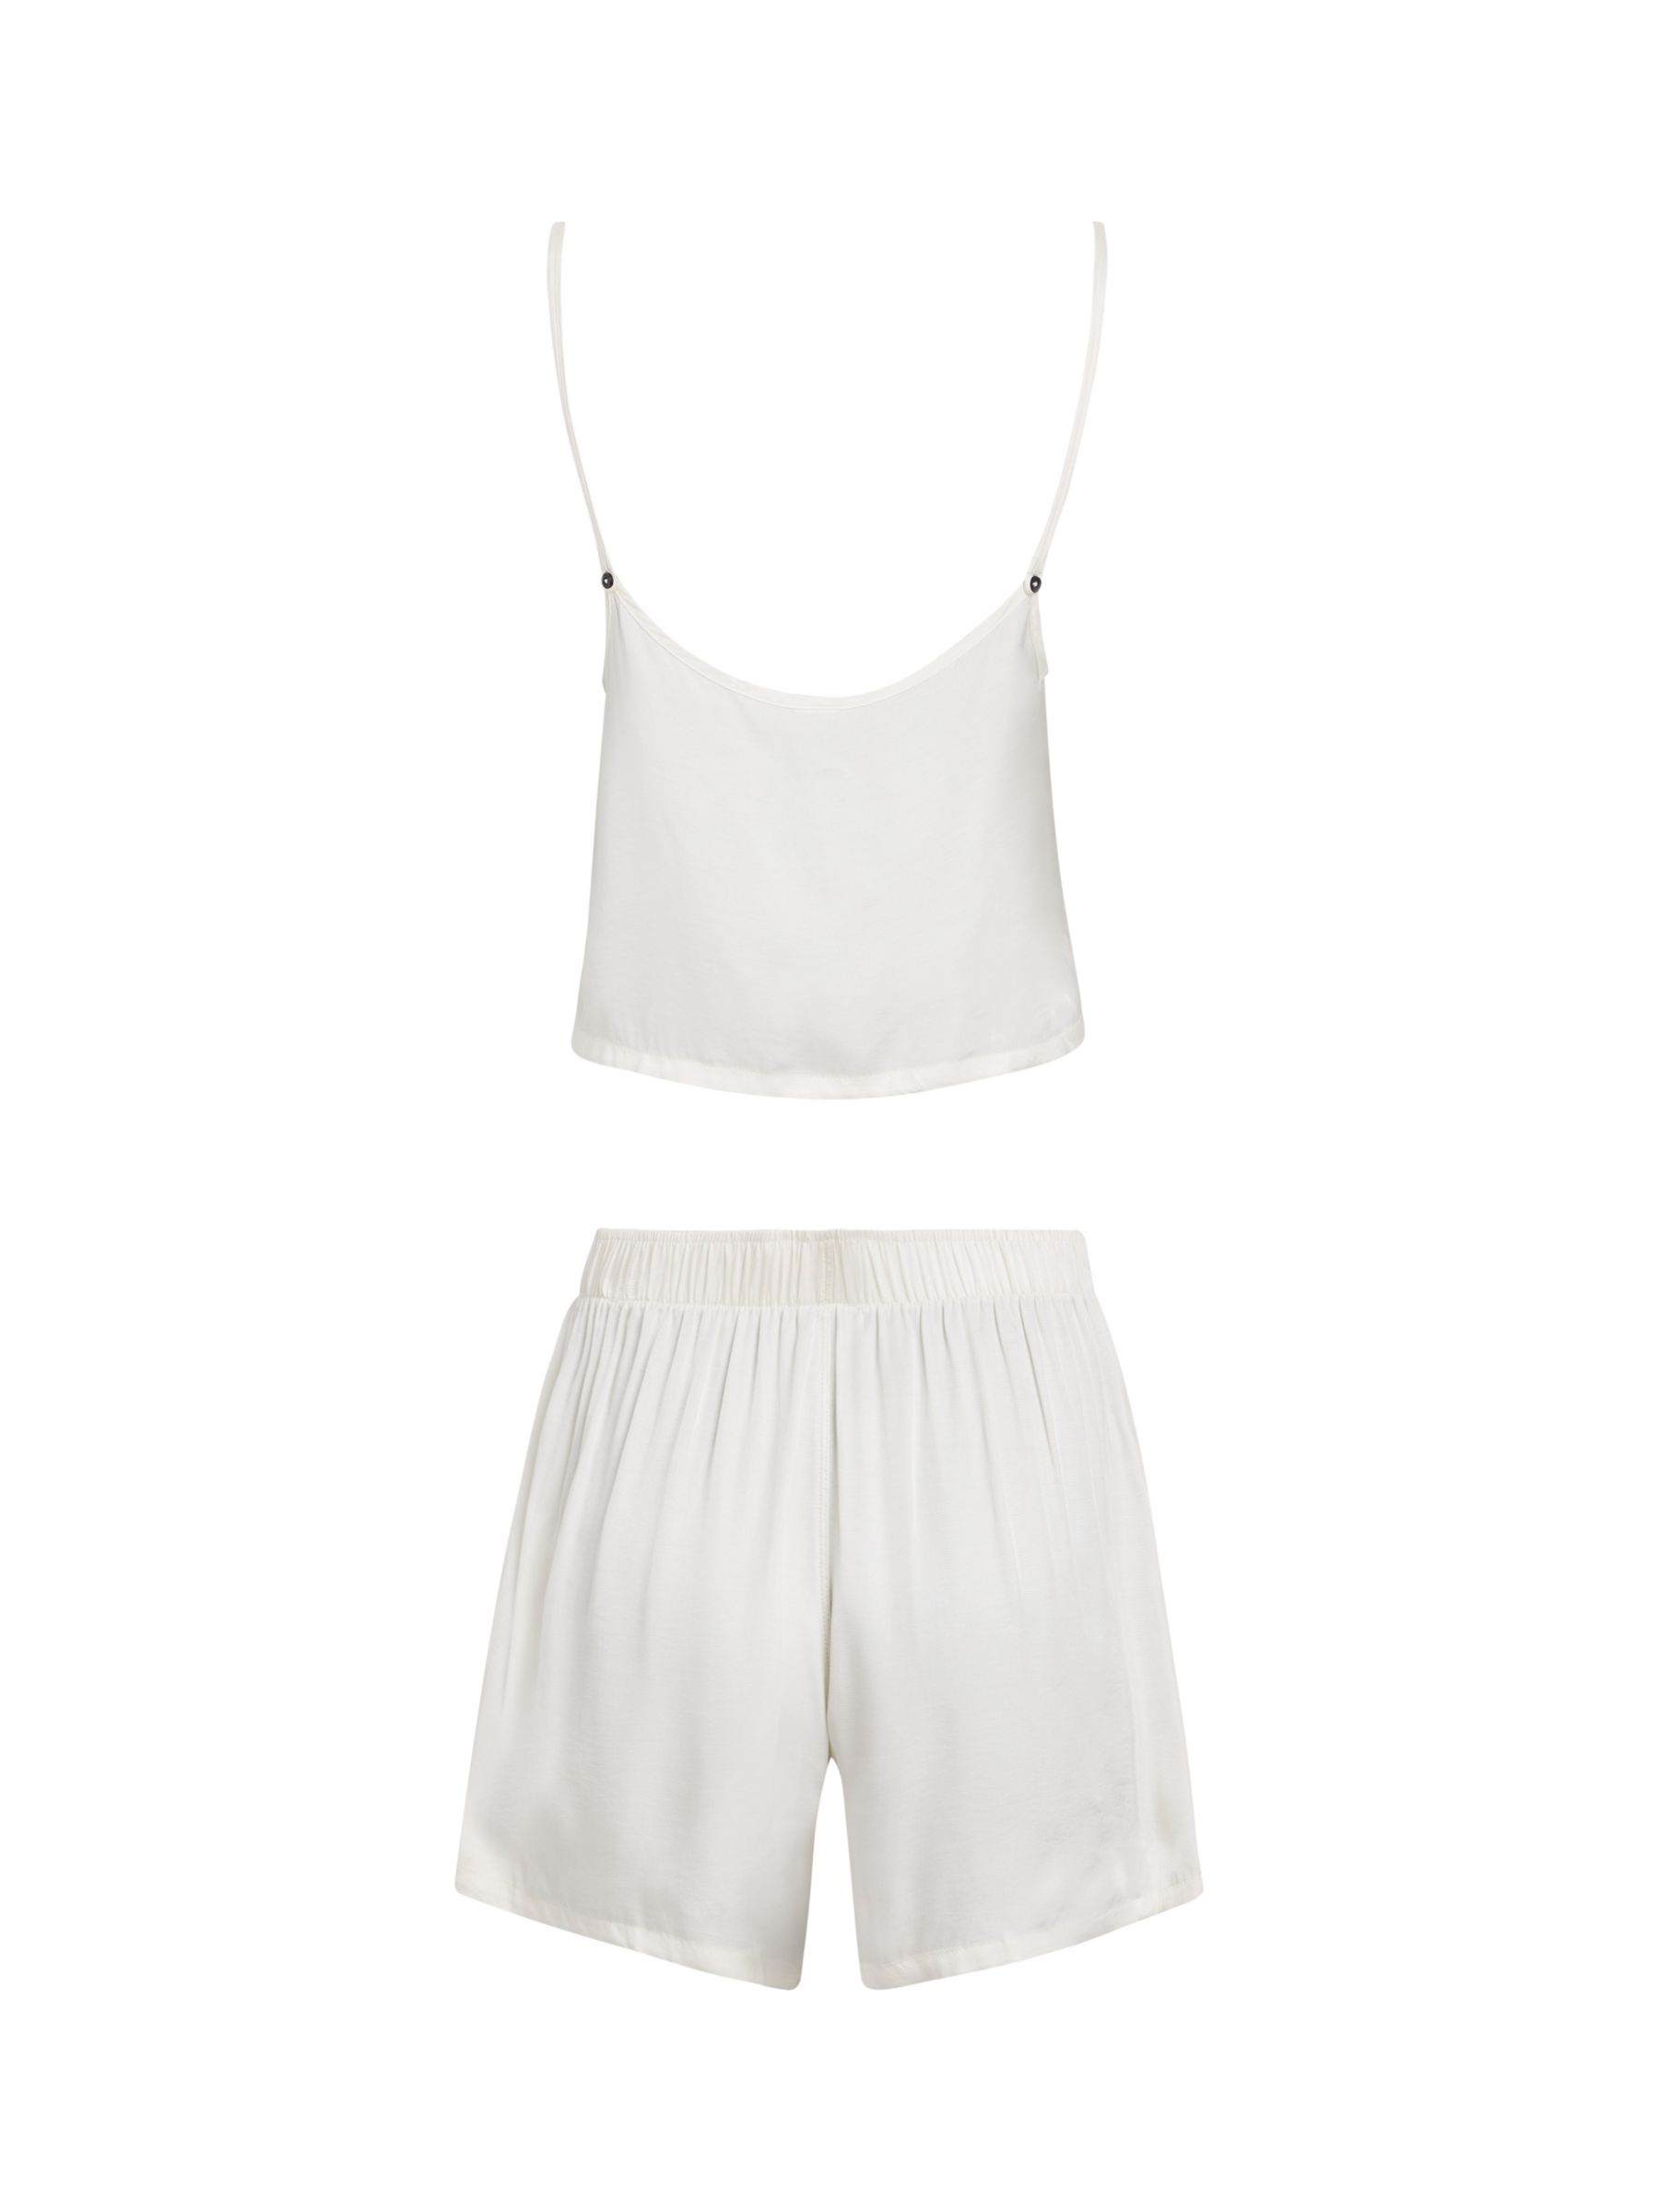 Buy Calvin Klein Cami & Shorts Pyjama Set, White Online at johnlewis.com